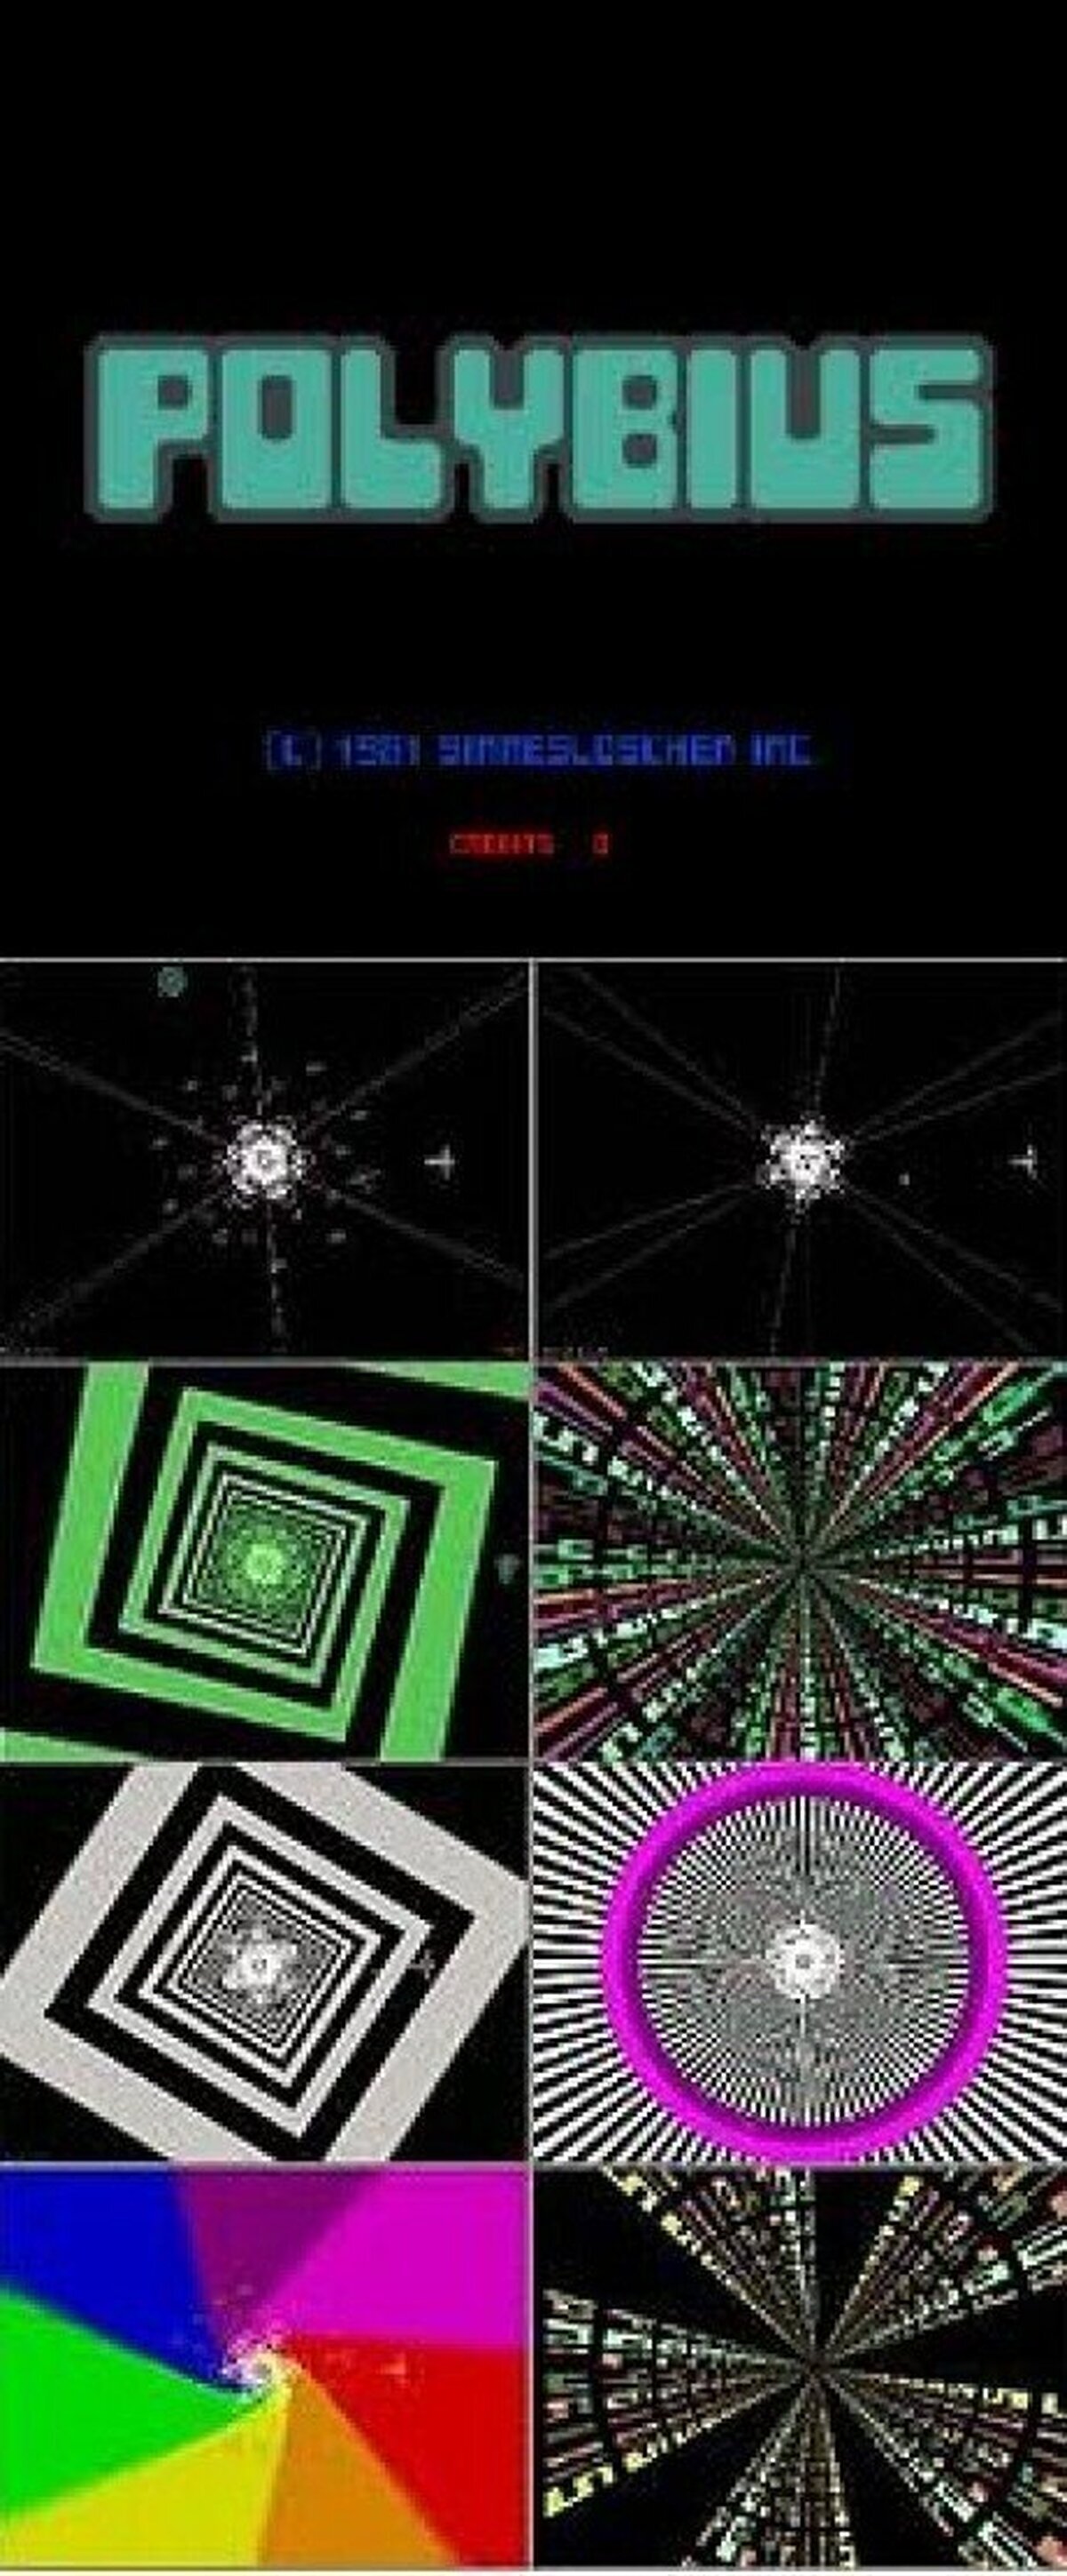 POLYBIUS - el videojuego de 1981 que causaba locura, pesadillas  y tendencia al suicidio